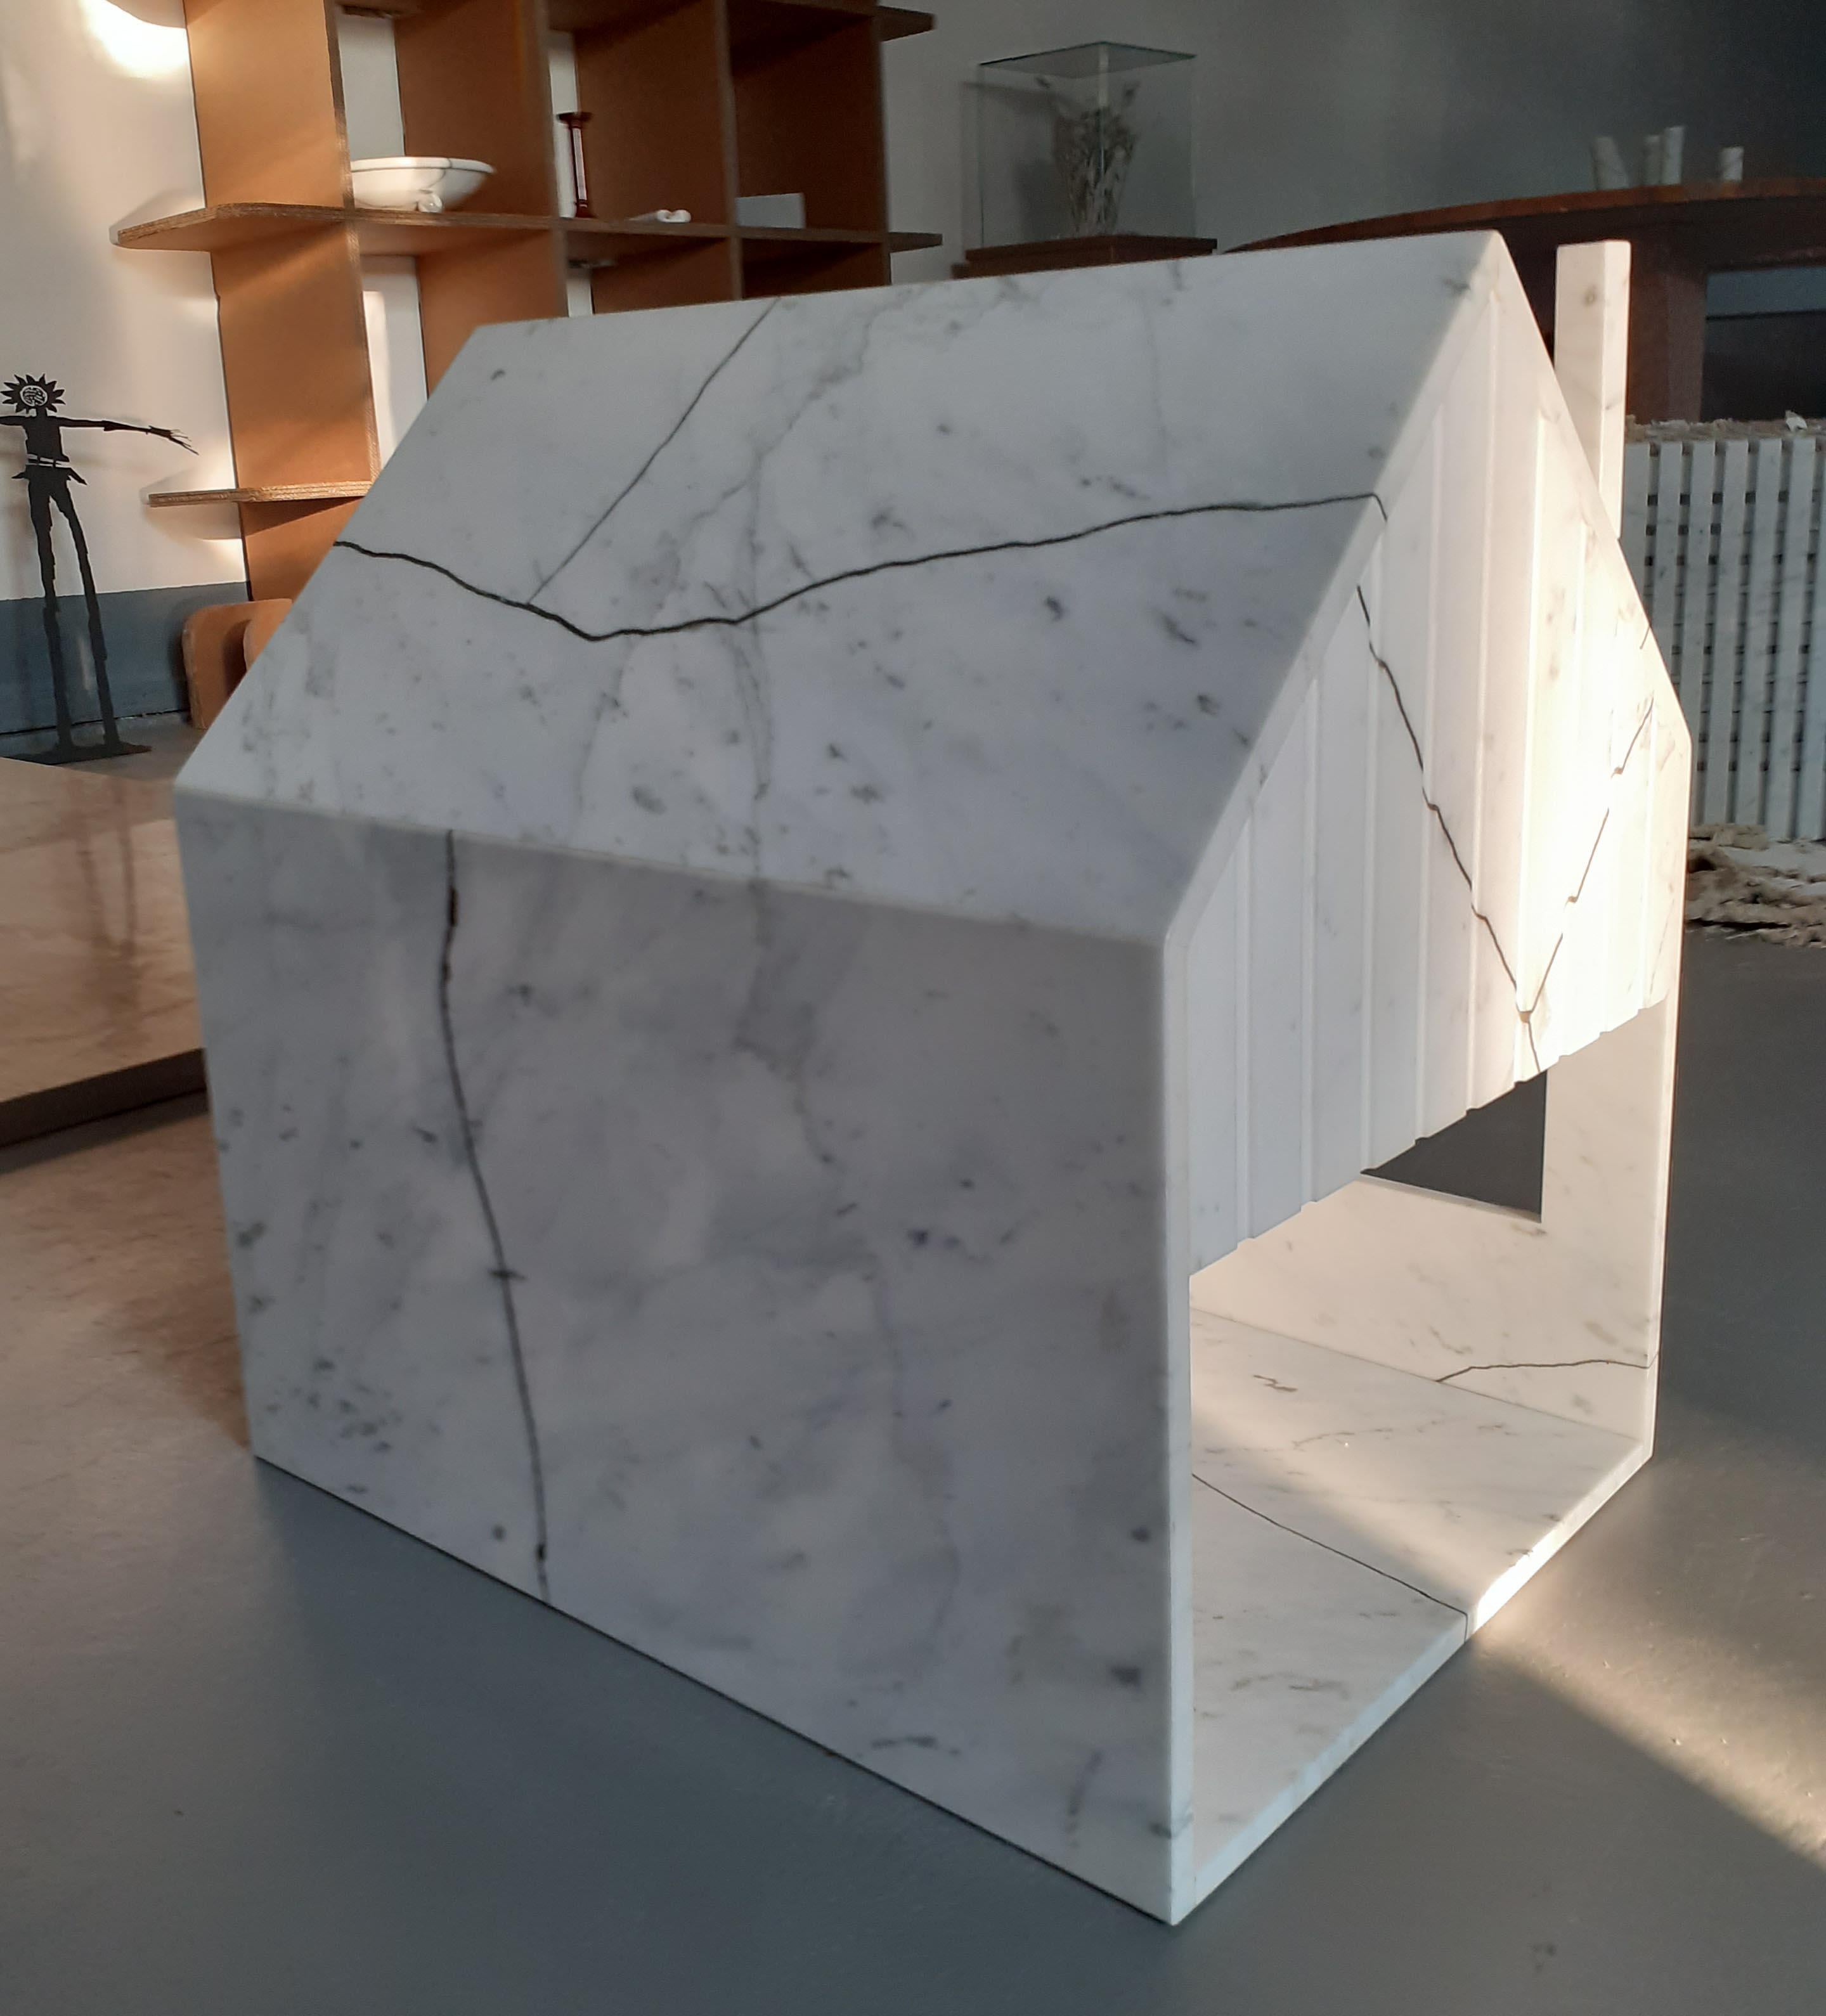 Année 2020
Niche pour chien en marbre réalisée avec du Statuario blanc de Carrare récupéré et du laiton recyclé.
MATERIAL : laiton recyclé, Statuario blanc Carrara récupéré
Dimensions : 38 x 51 x 50 cm.